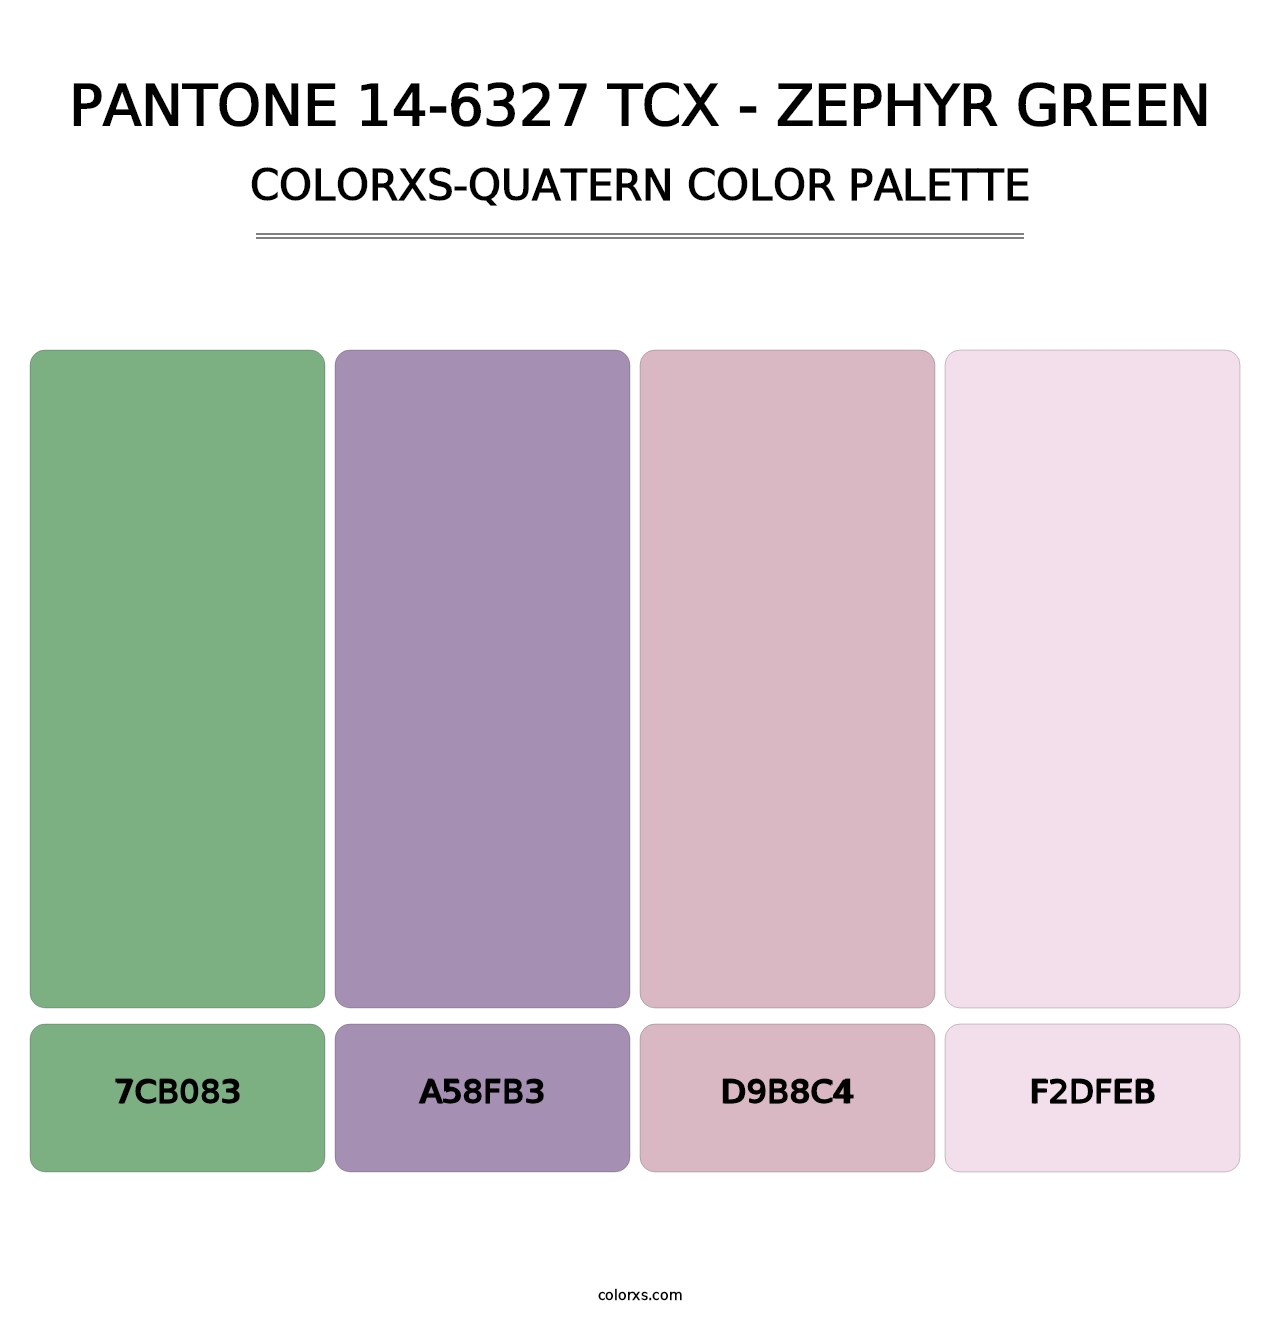 PANTONE 14-6327 TCX - Zephyr Green - Colorxs Quatern Palette